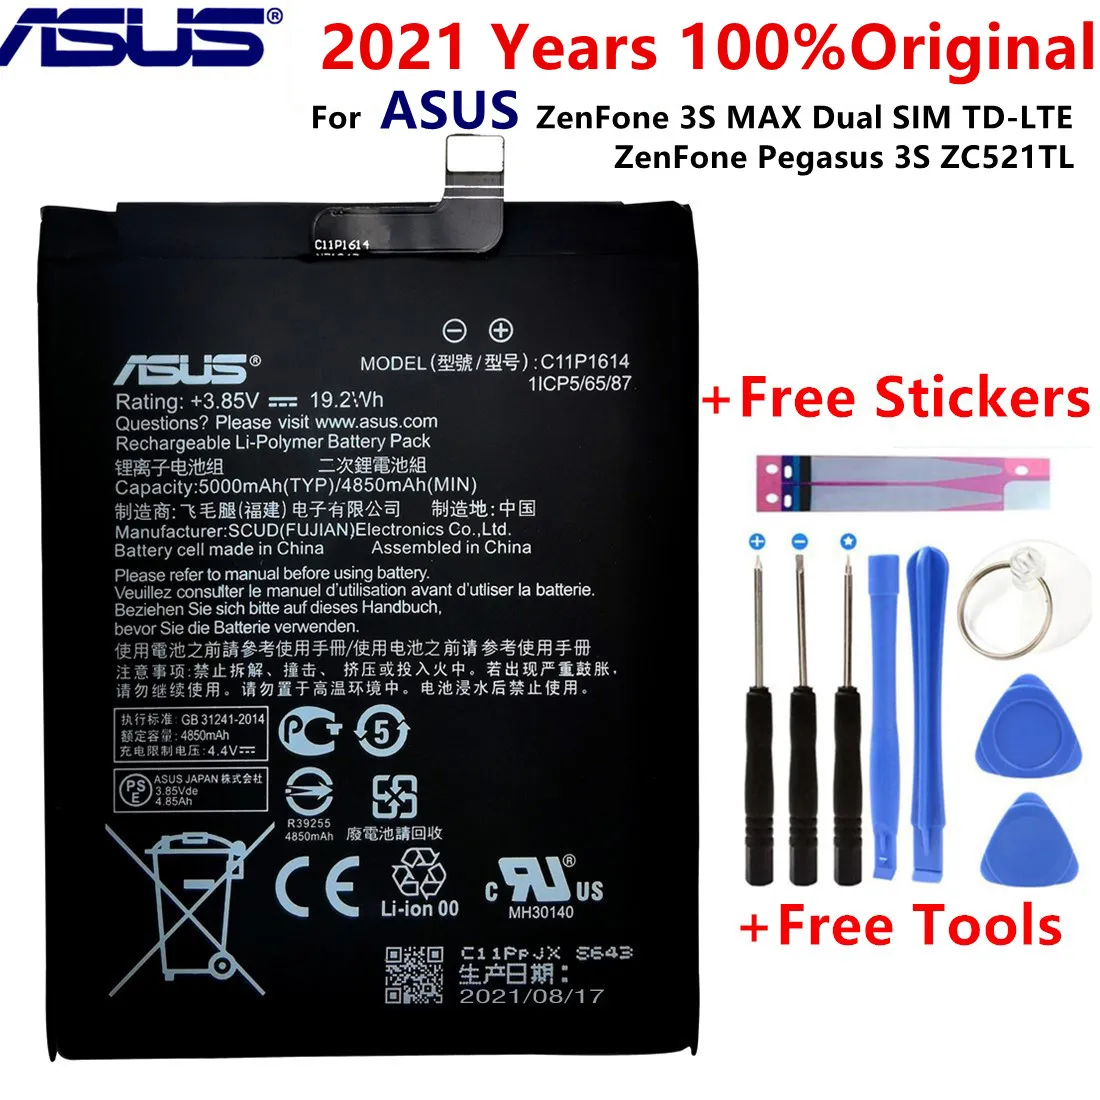 Аккумулятор ASUS C11P1614 для ZenFone 3S MAX две SIM-карты TD-LTE Pegasus ZC521TL 5000 мАч | Мобильные